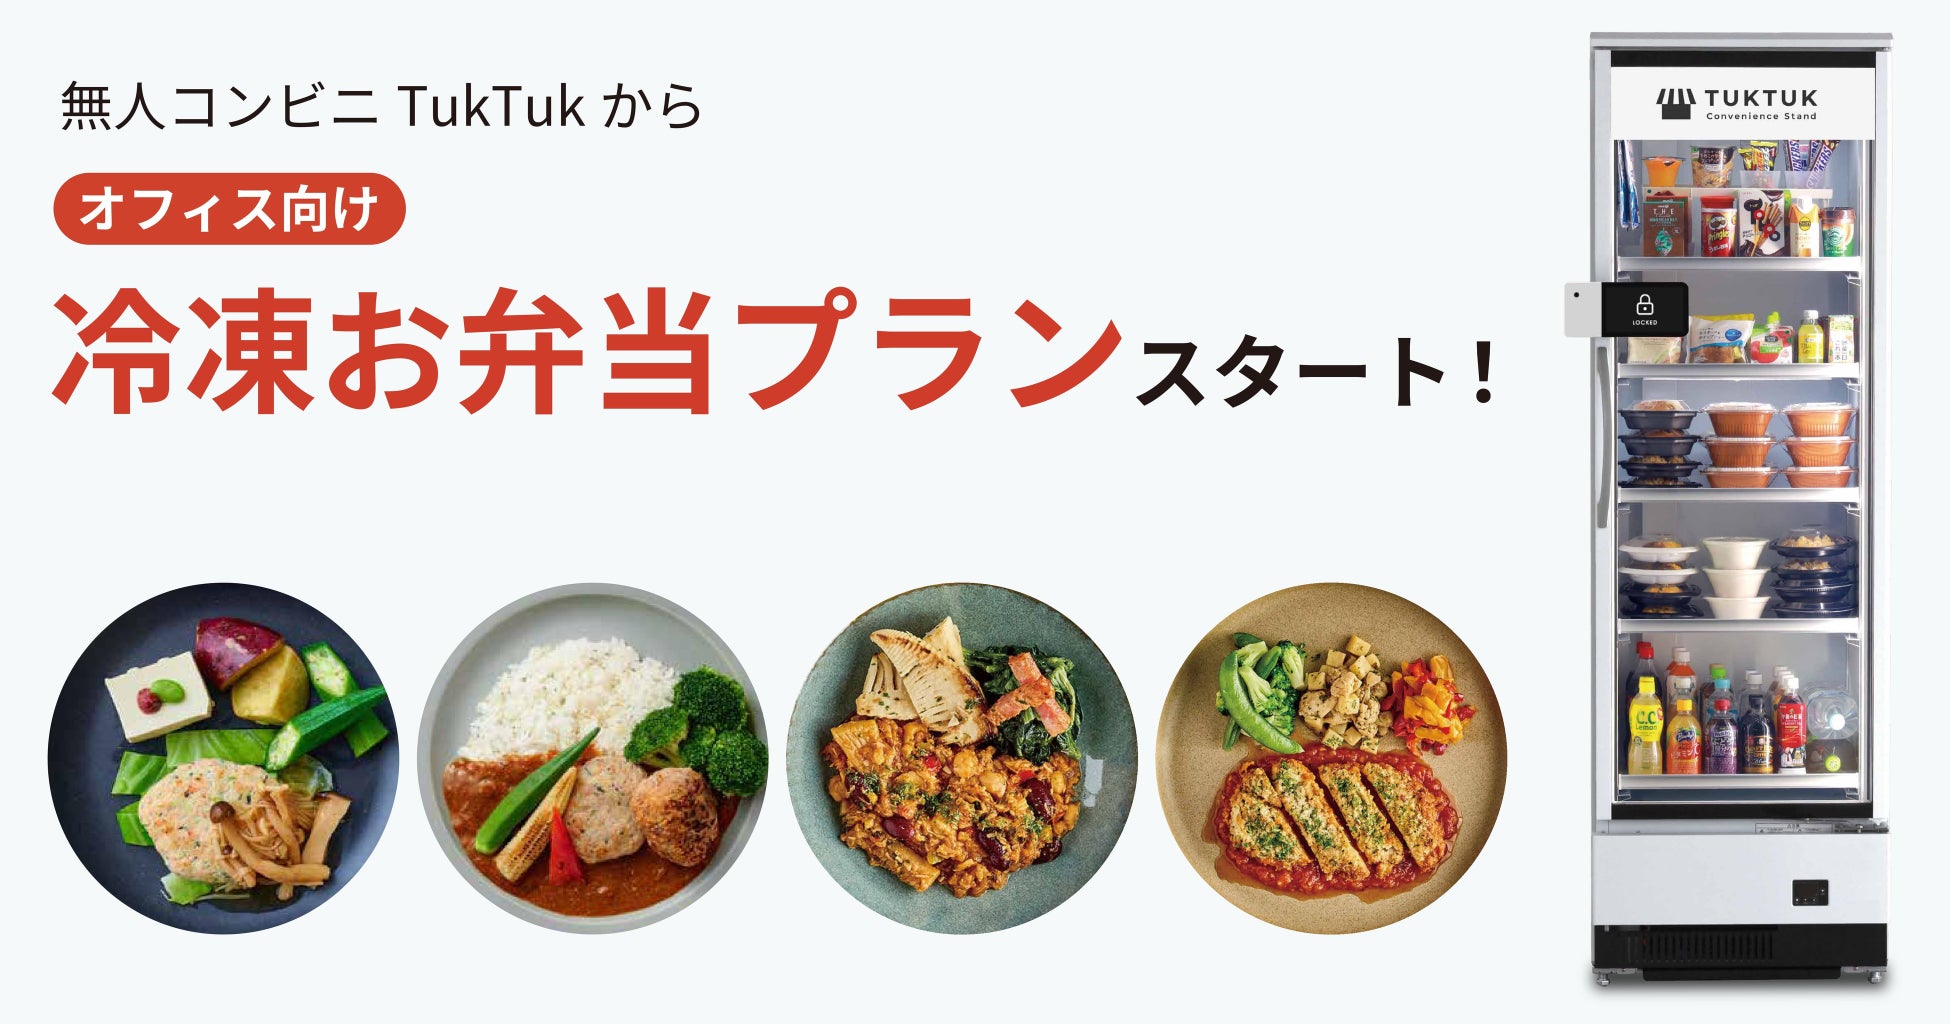 事業共創カンパニーRelicが展開する無人コンビニ「TukTuk」、オフィス向けに冷凍お弁当プランを提供開始